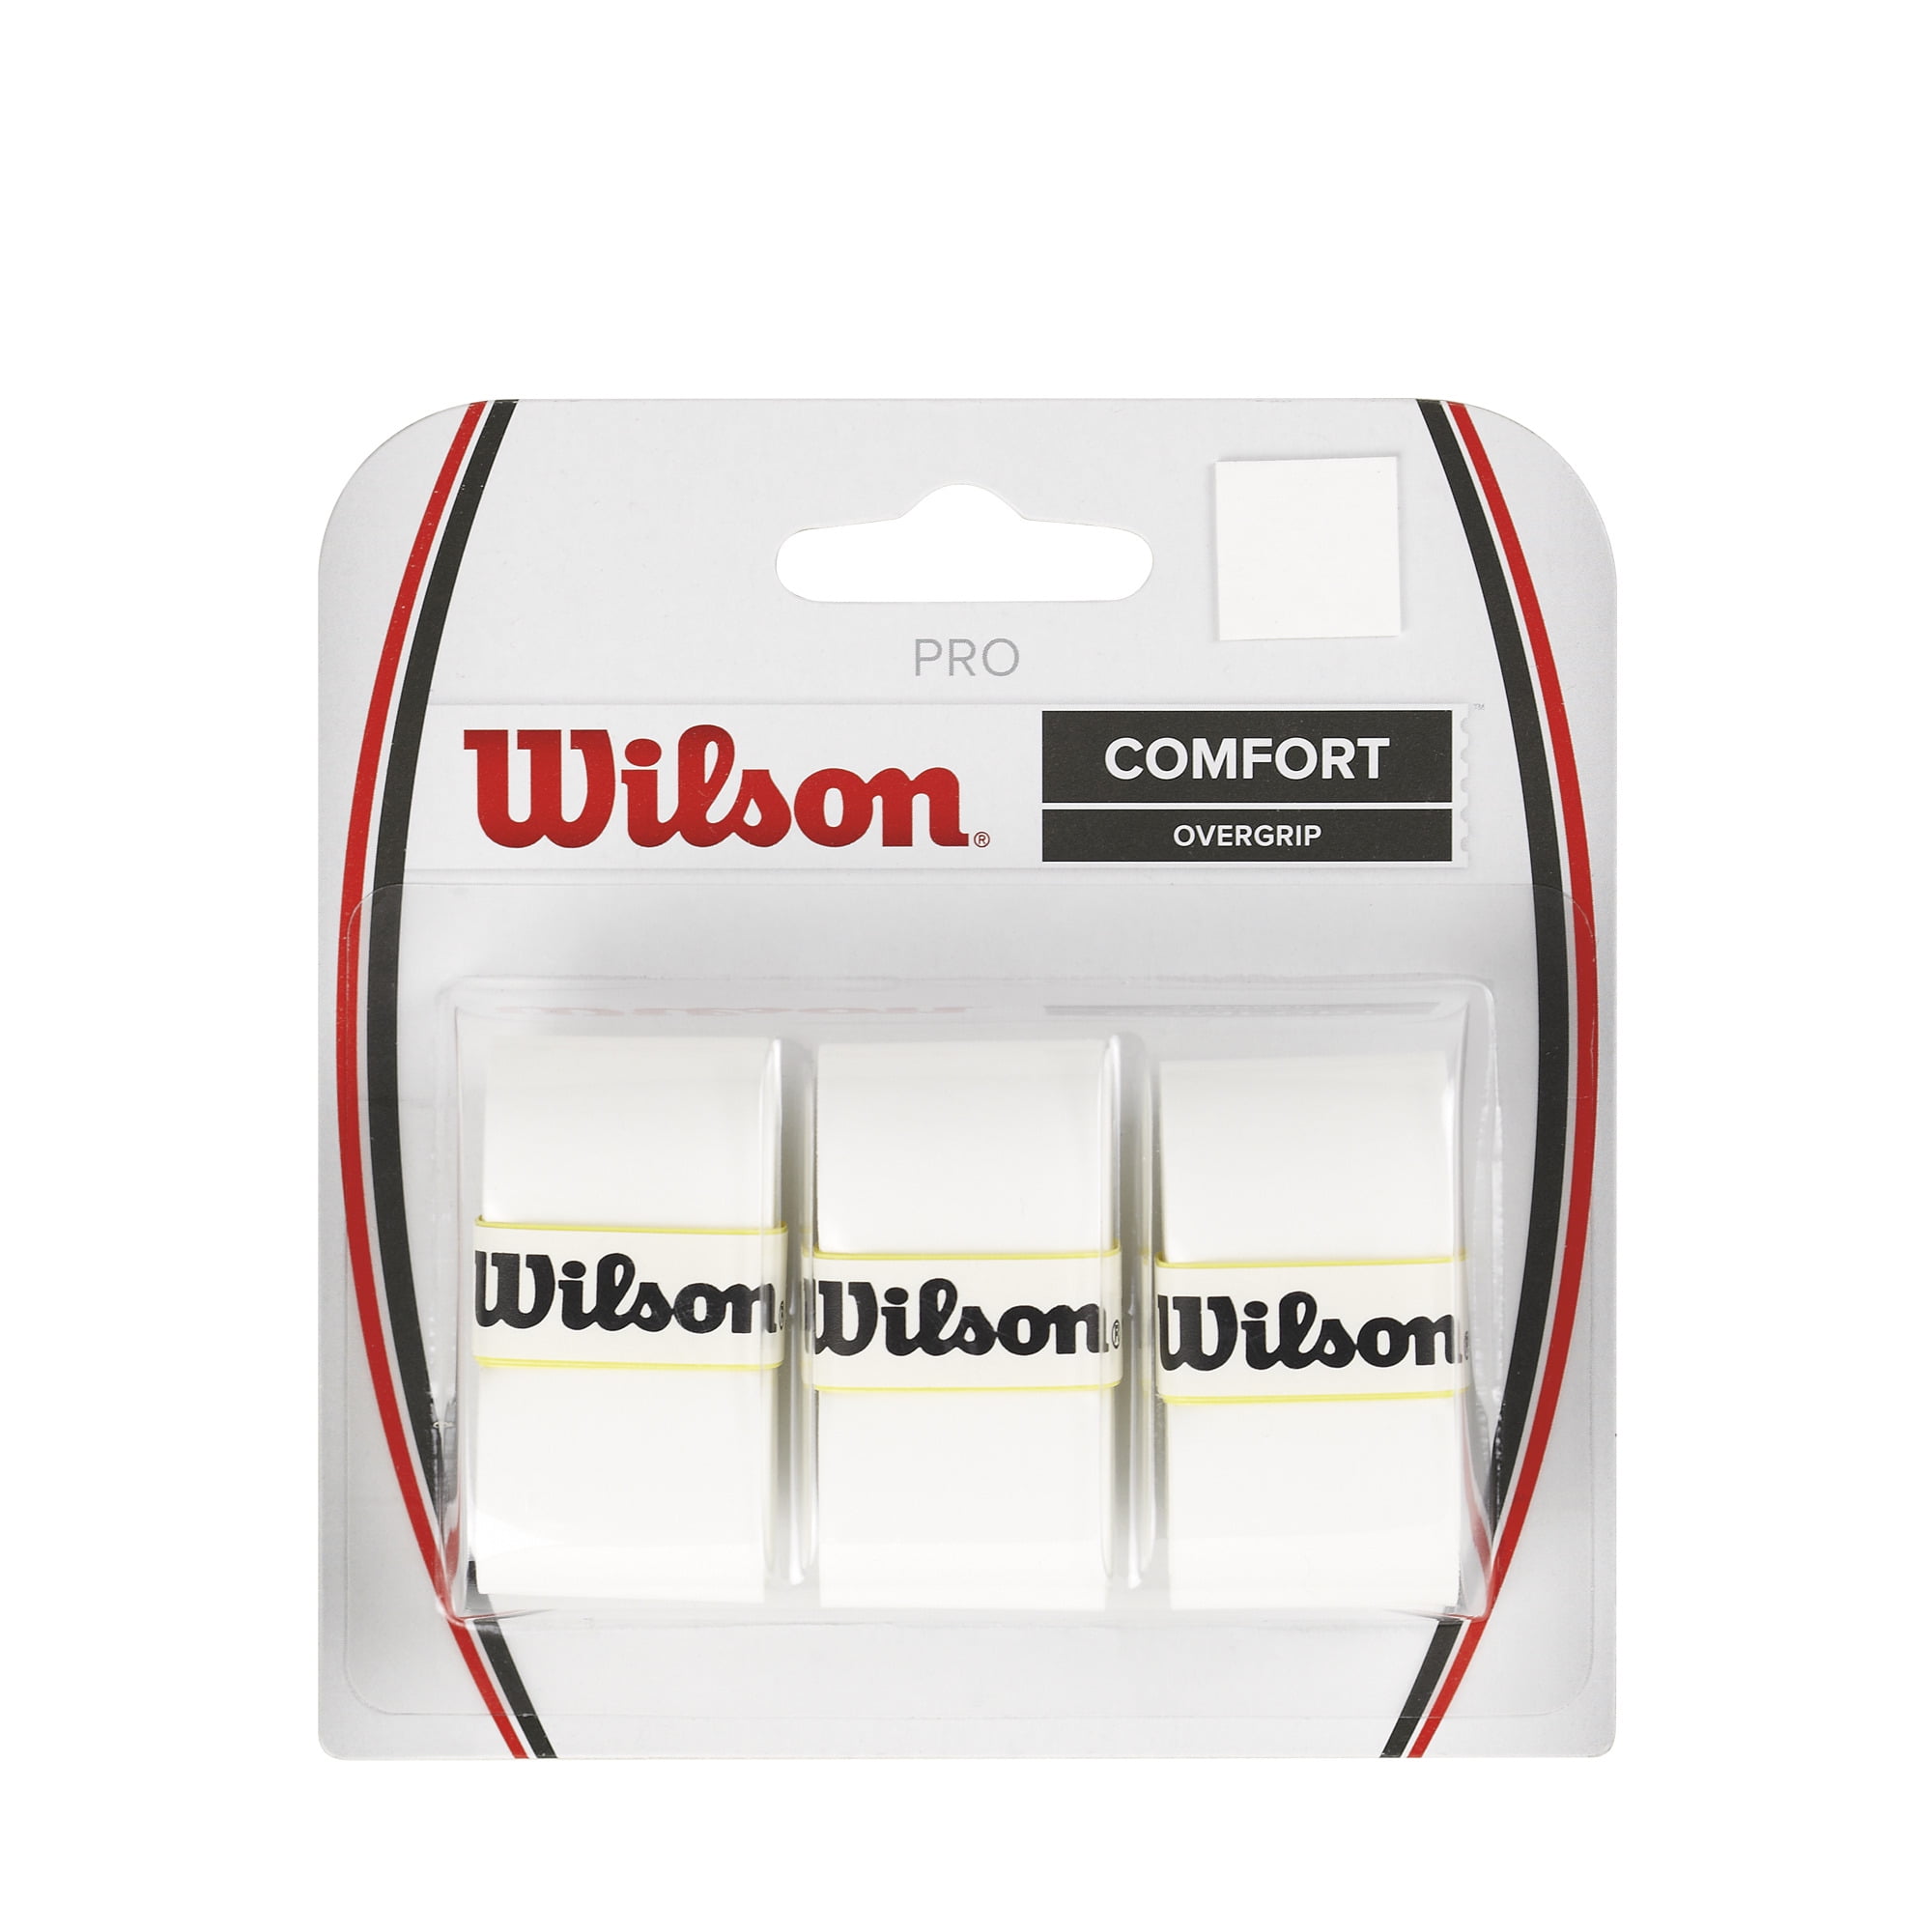 Geleerde Activeren kussen Wilson Pro Comfort Overgrip for Tennis Rackets, White - 3 Rolls -  Walmart.com